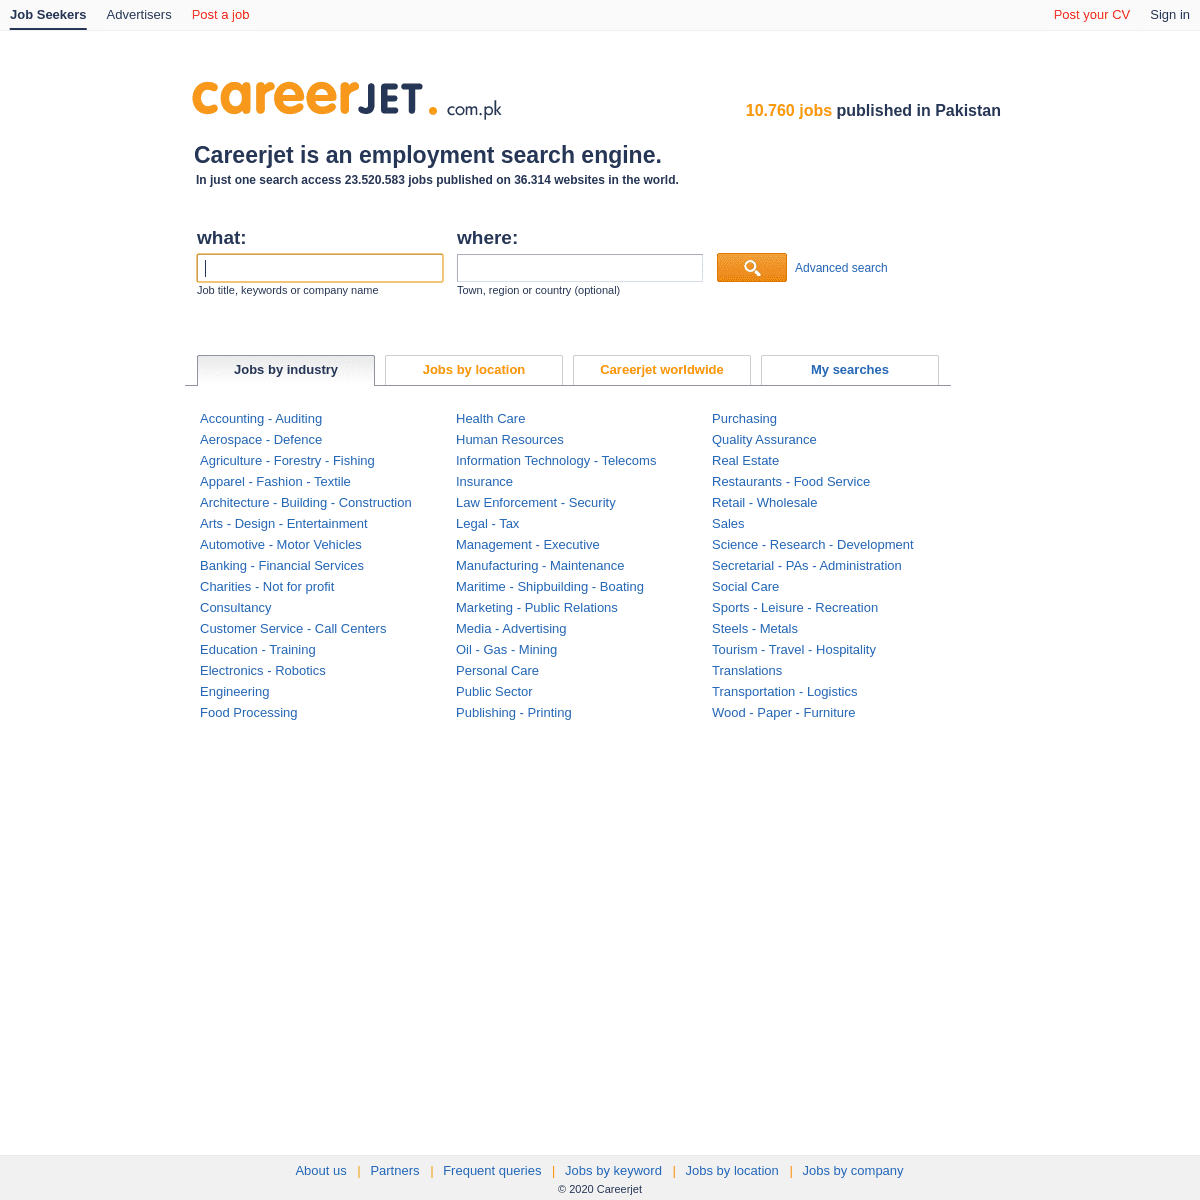 A complete backup of careerjet.com.pk